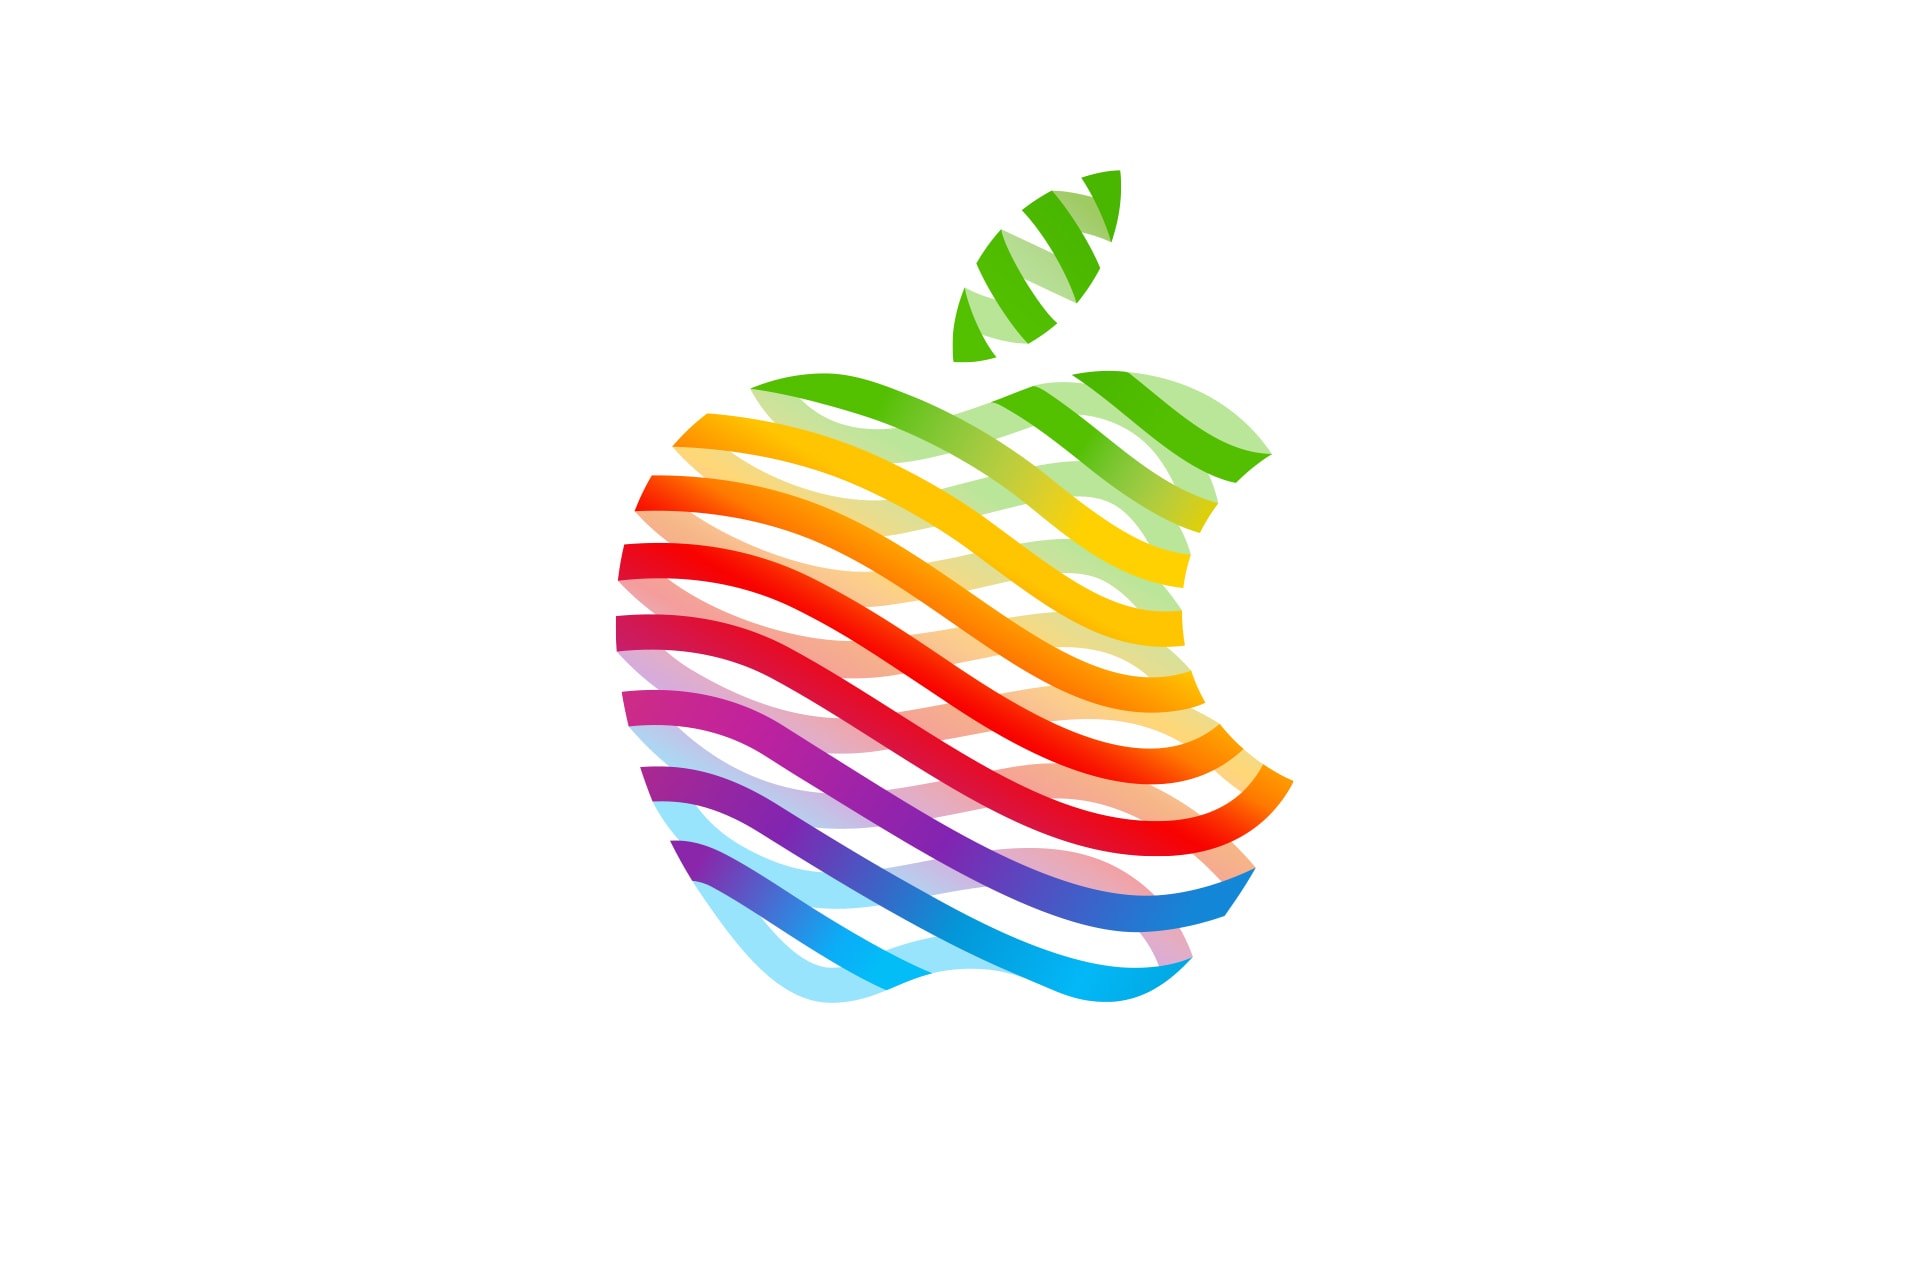 アップル創業時から1997年まで使われたレインボーロゴが限定で復活　Apple American Dream New Jersey 1997 Apple 'rainbow' logo revival news 